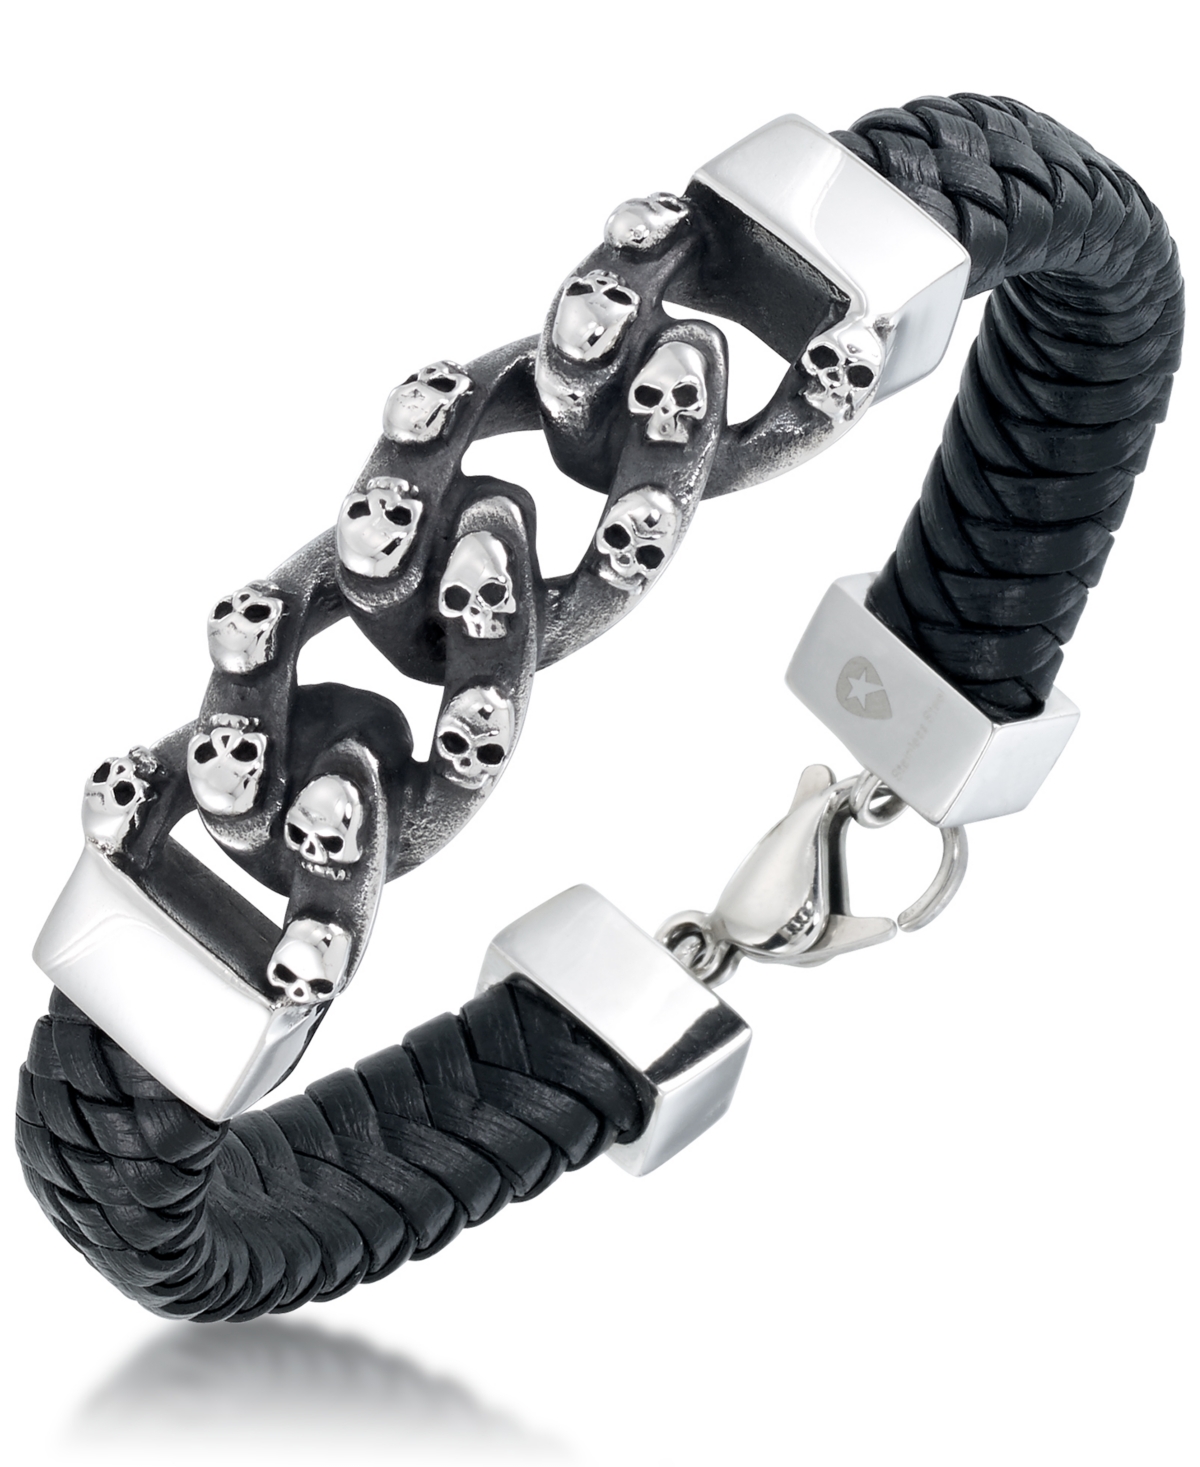 Men's Skull Link Leather Bracelet in Stainless Steel - Stainless Steel